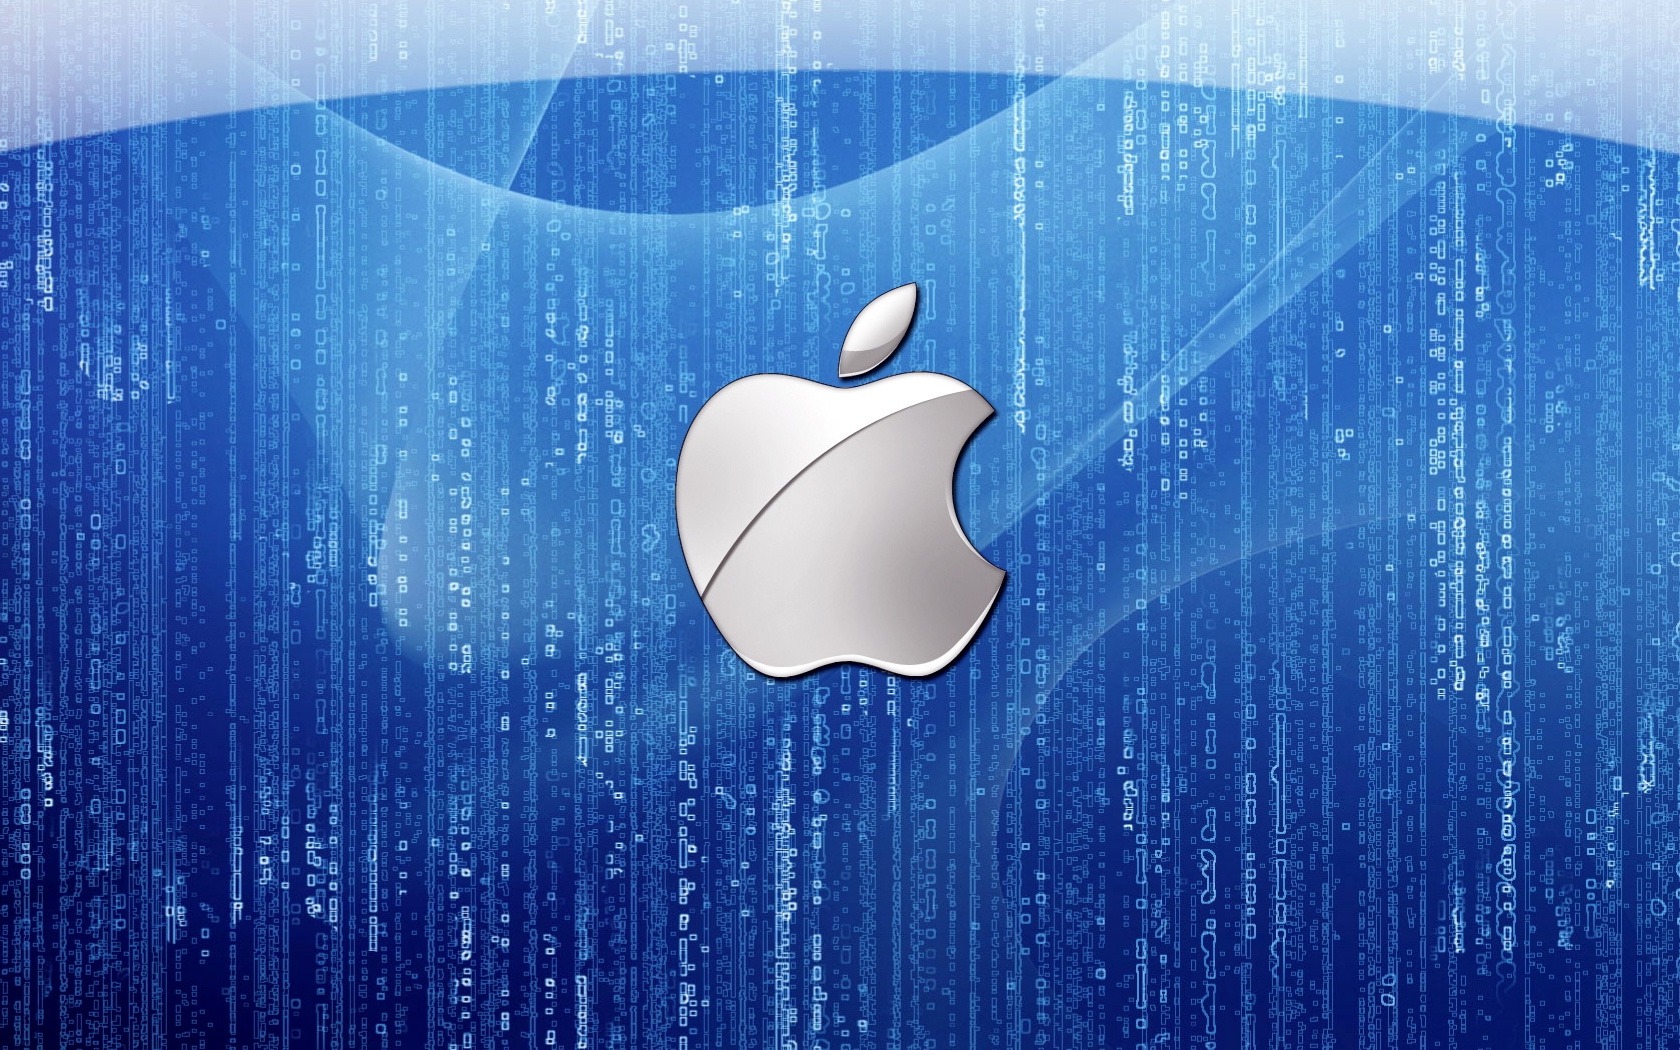 Blue Apple Logo Wallpaper Stock Photos